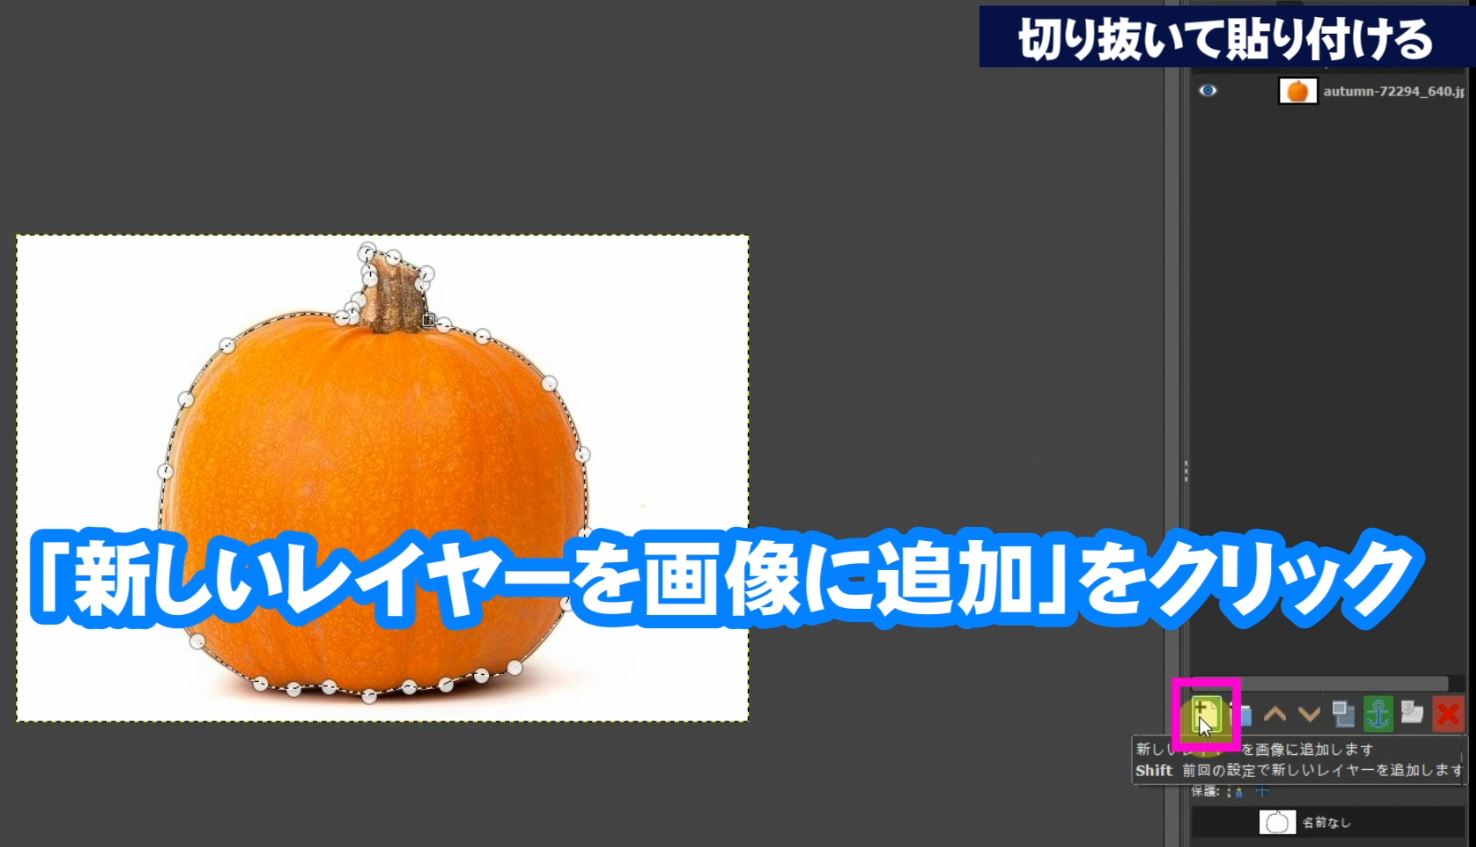 レイヤーダイアログ内の「新しいレイヤーを画像に追加」をクリックして新しいレイヤーに切り抜いたかぼちゃを貼り付けます。